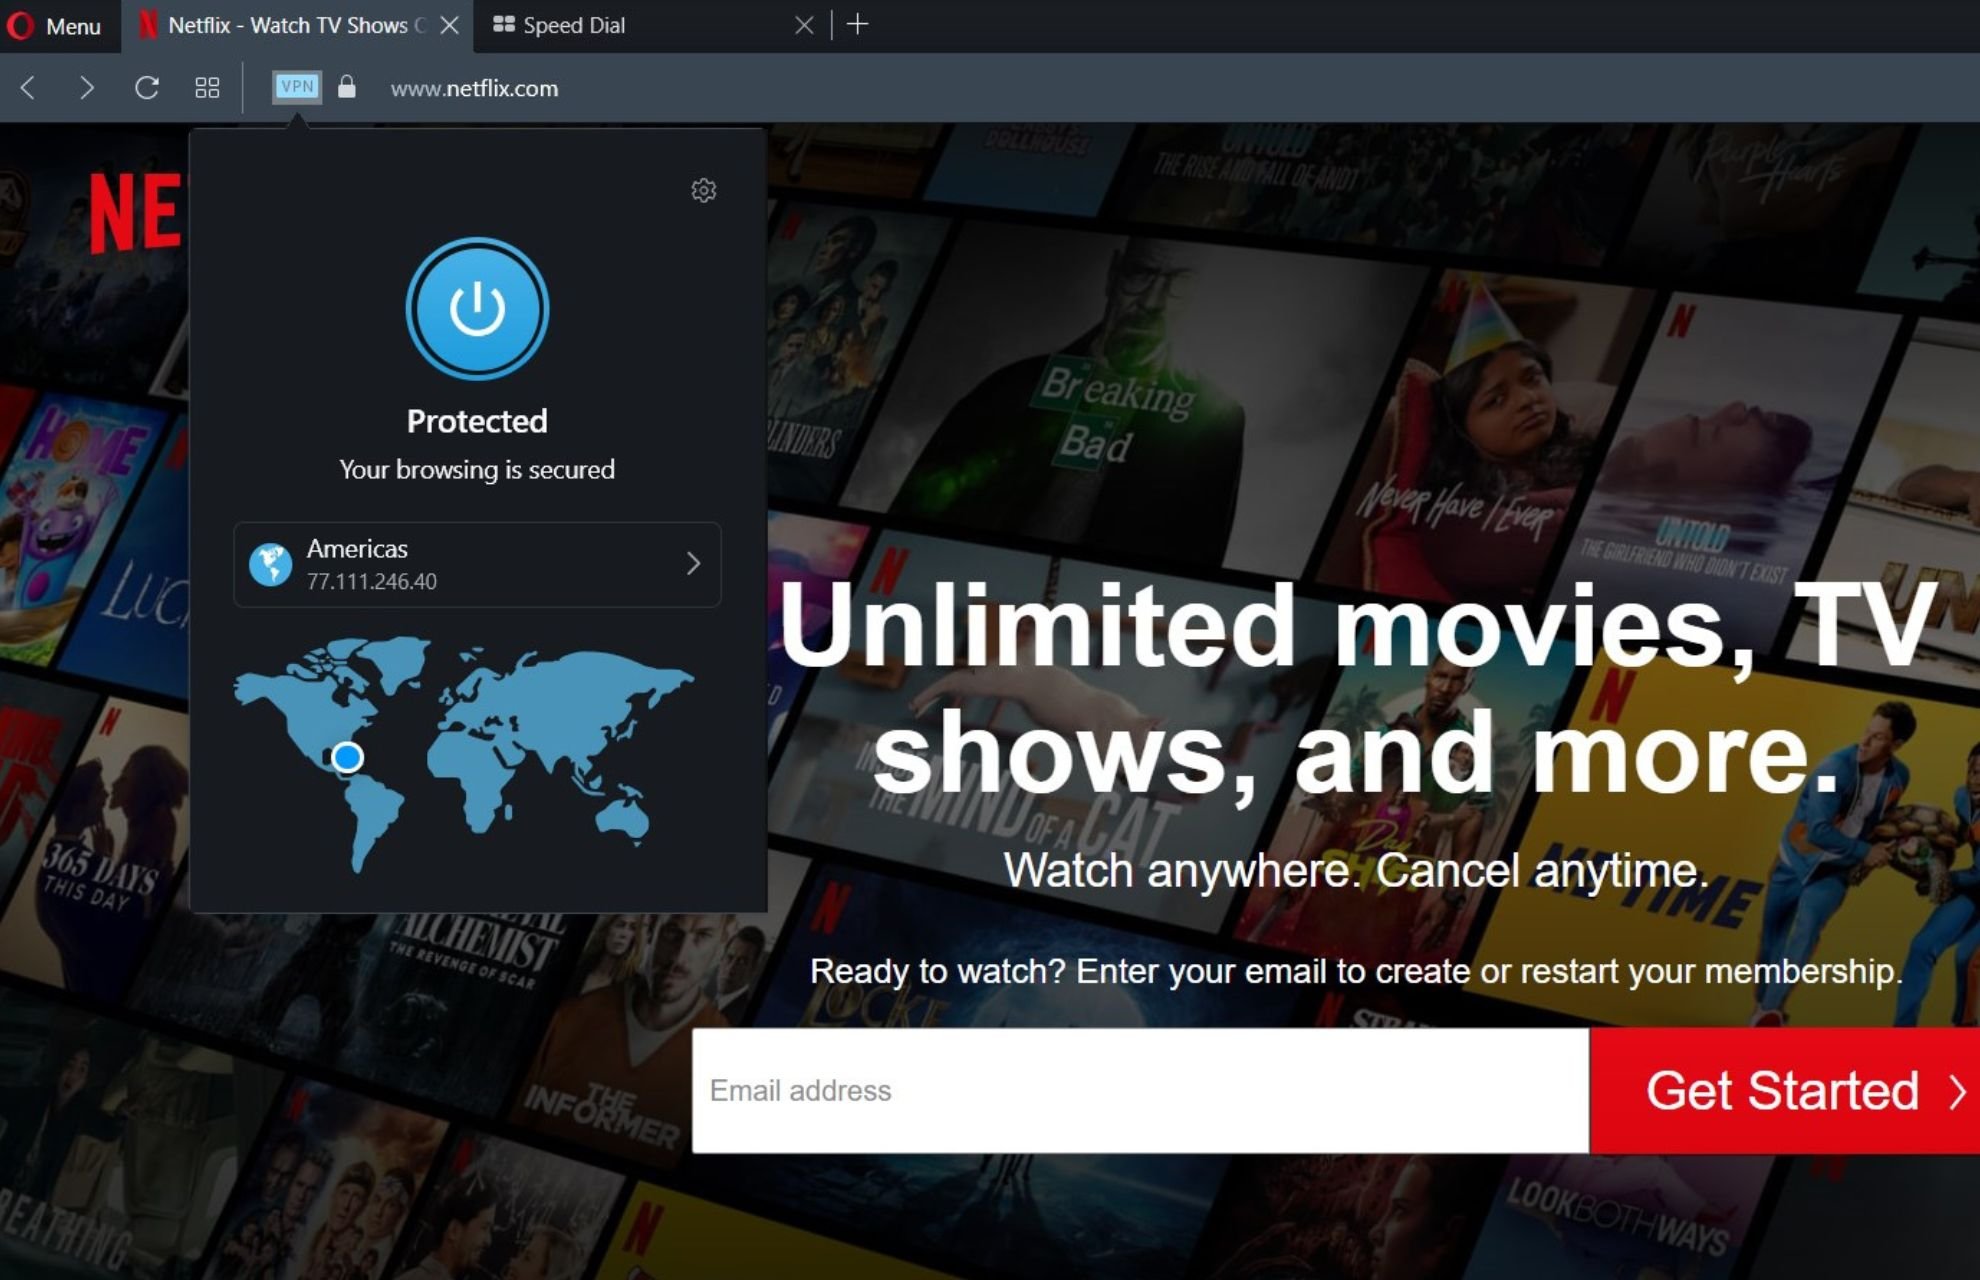 Can Opera VPN bypass Netflix?